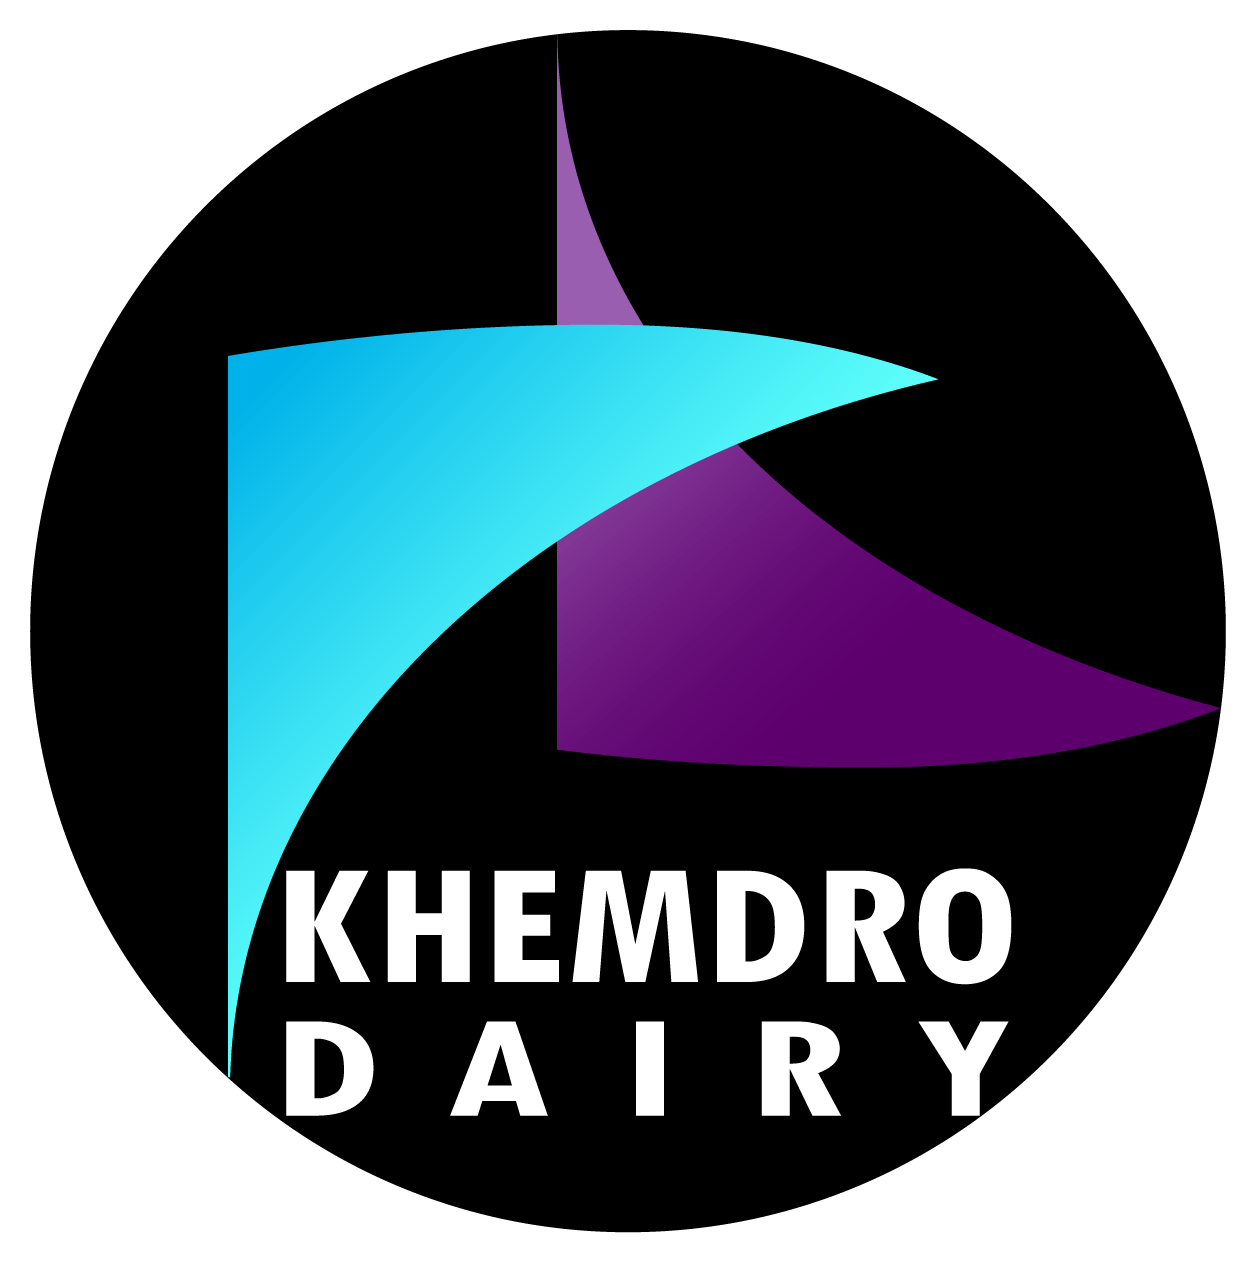 Khemdro Dairy